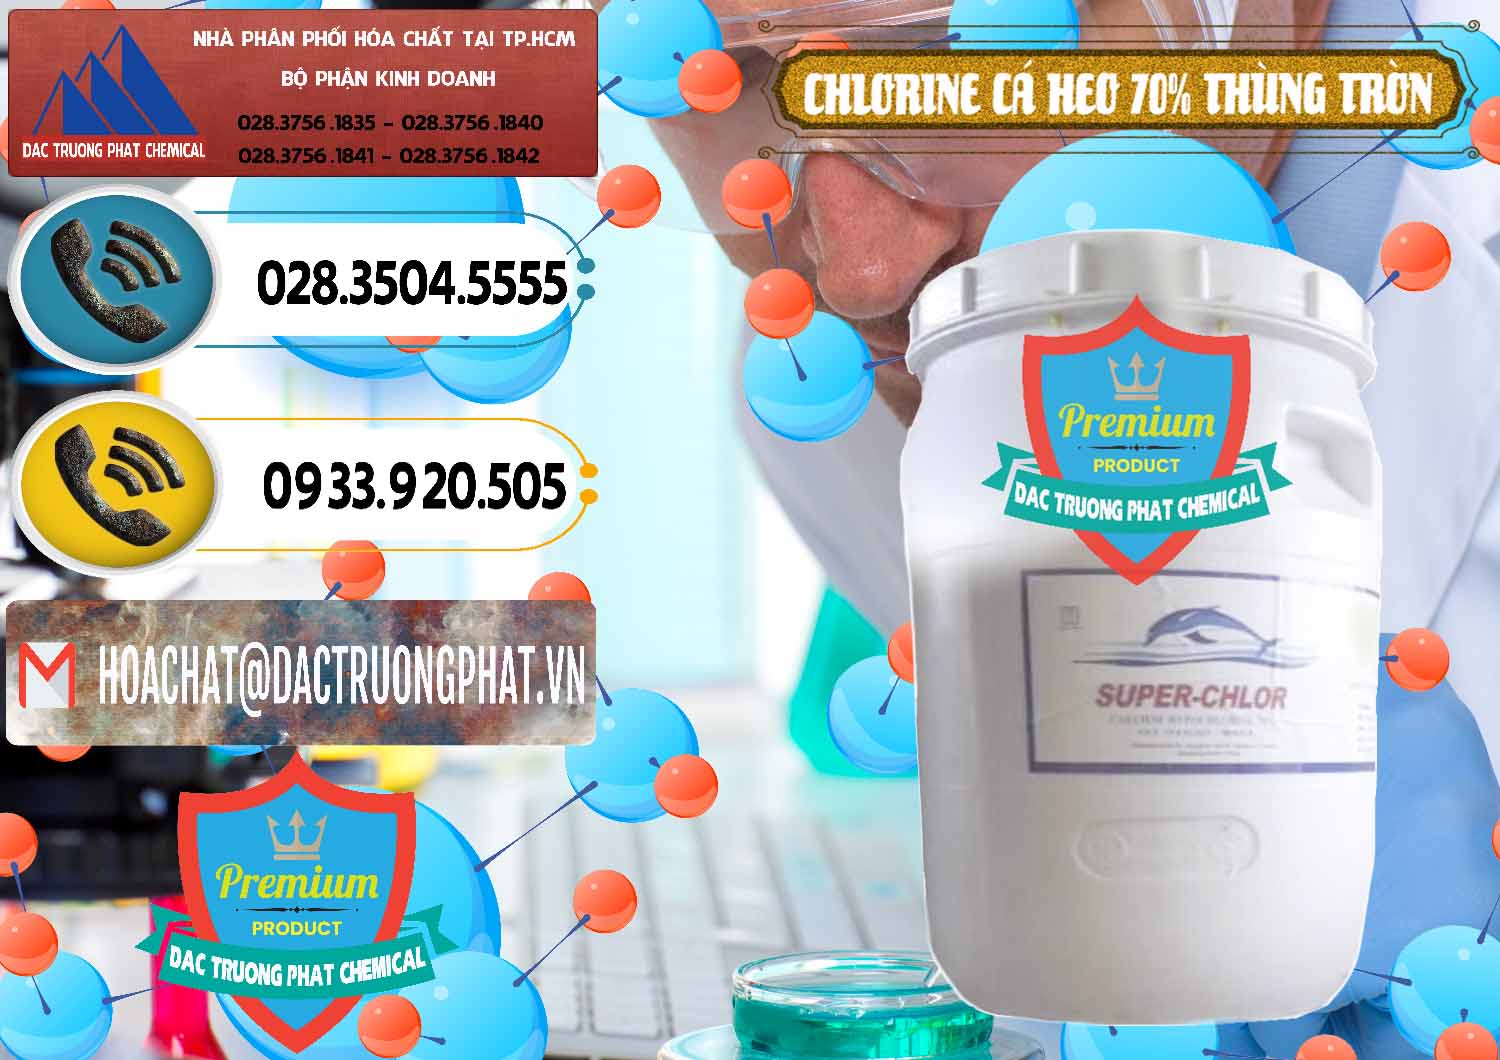 Bán Clorin - Chlorine Cá Heo 70% Super Chlor Thùng Tròn Nắp Trắng Trung Quốc China - 0239 - Nơi phân phối ( nhập khẩu ) hóa chất tại TP.HCM - hoachatdetnhuom.vn